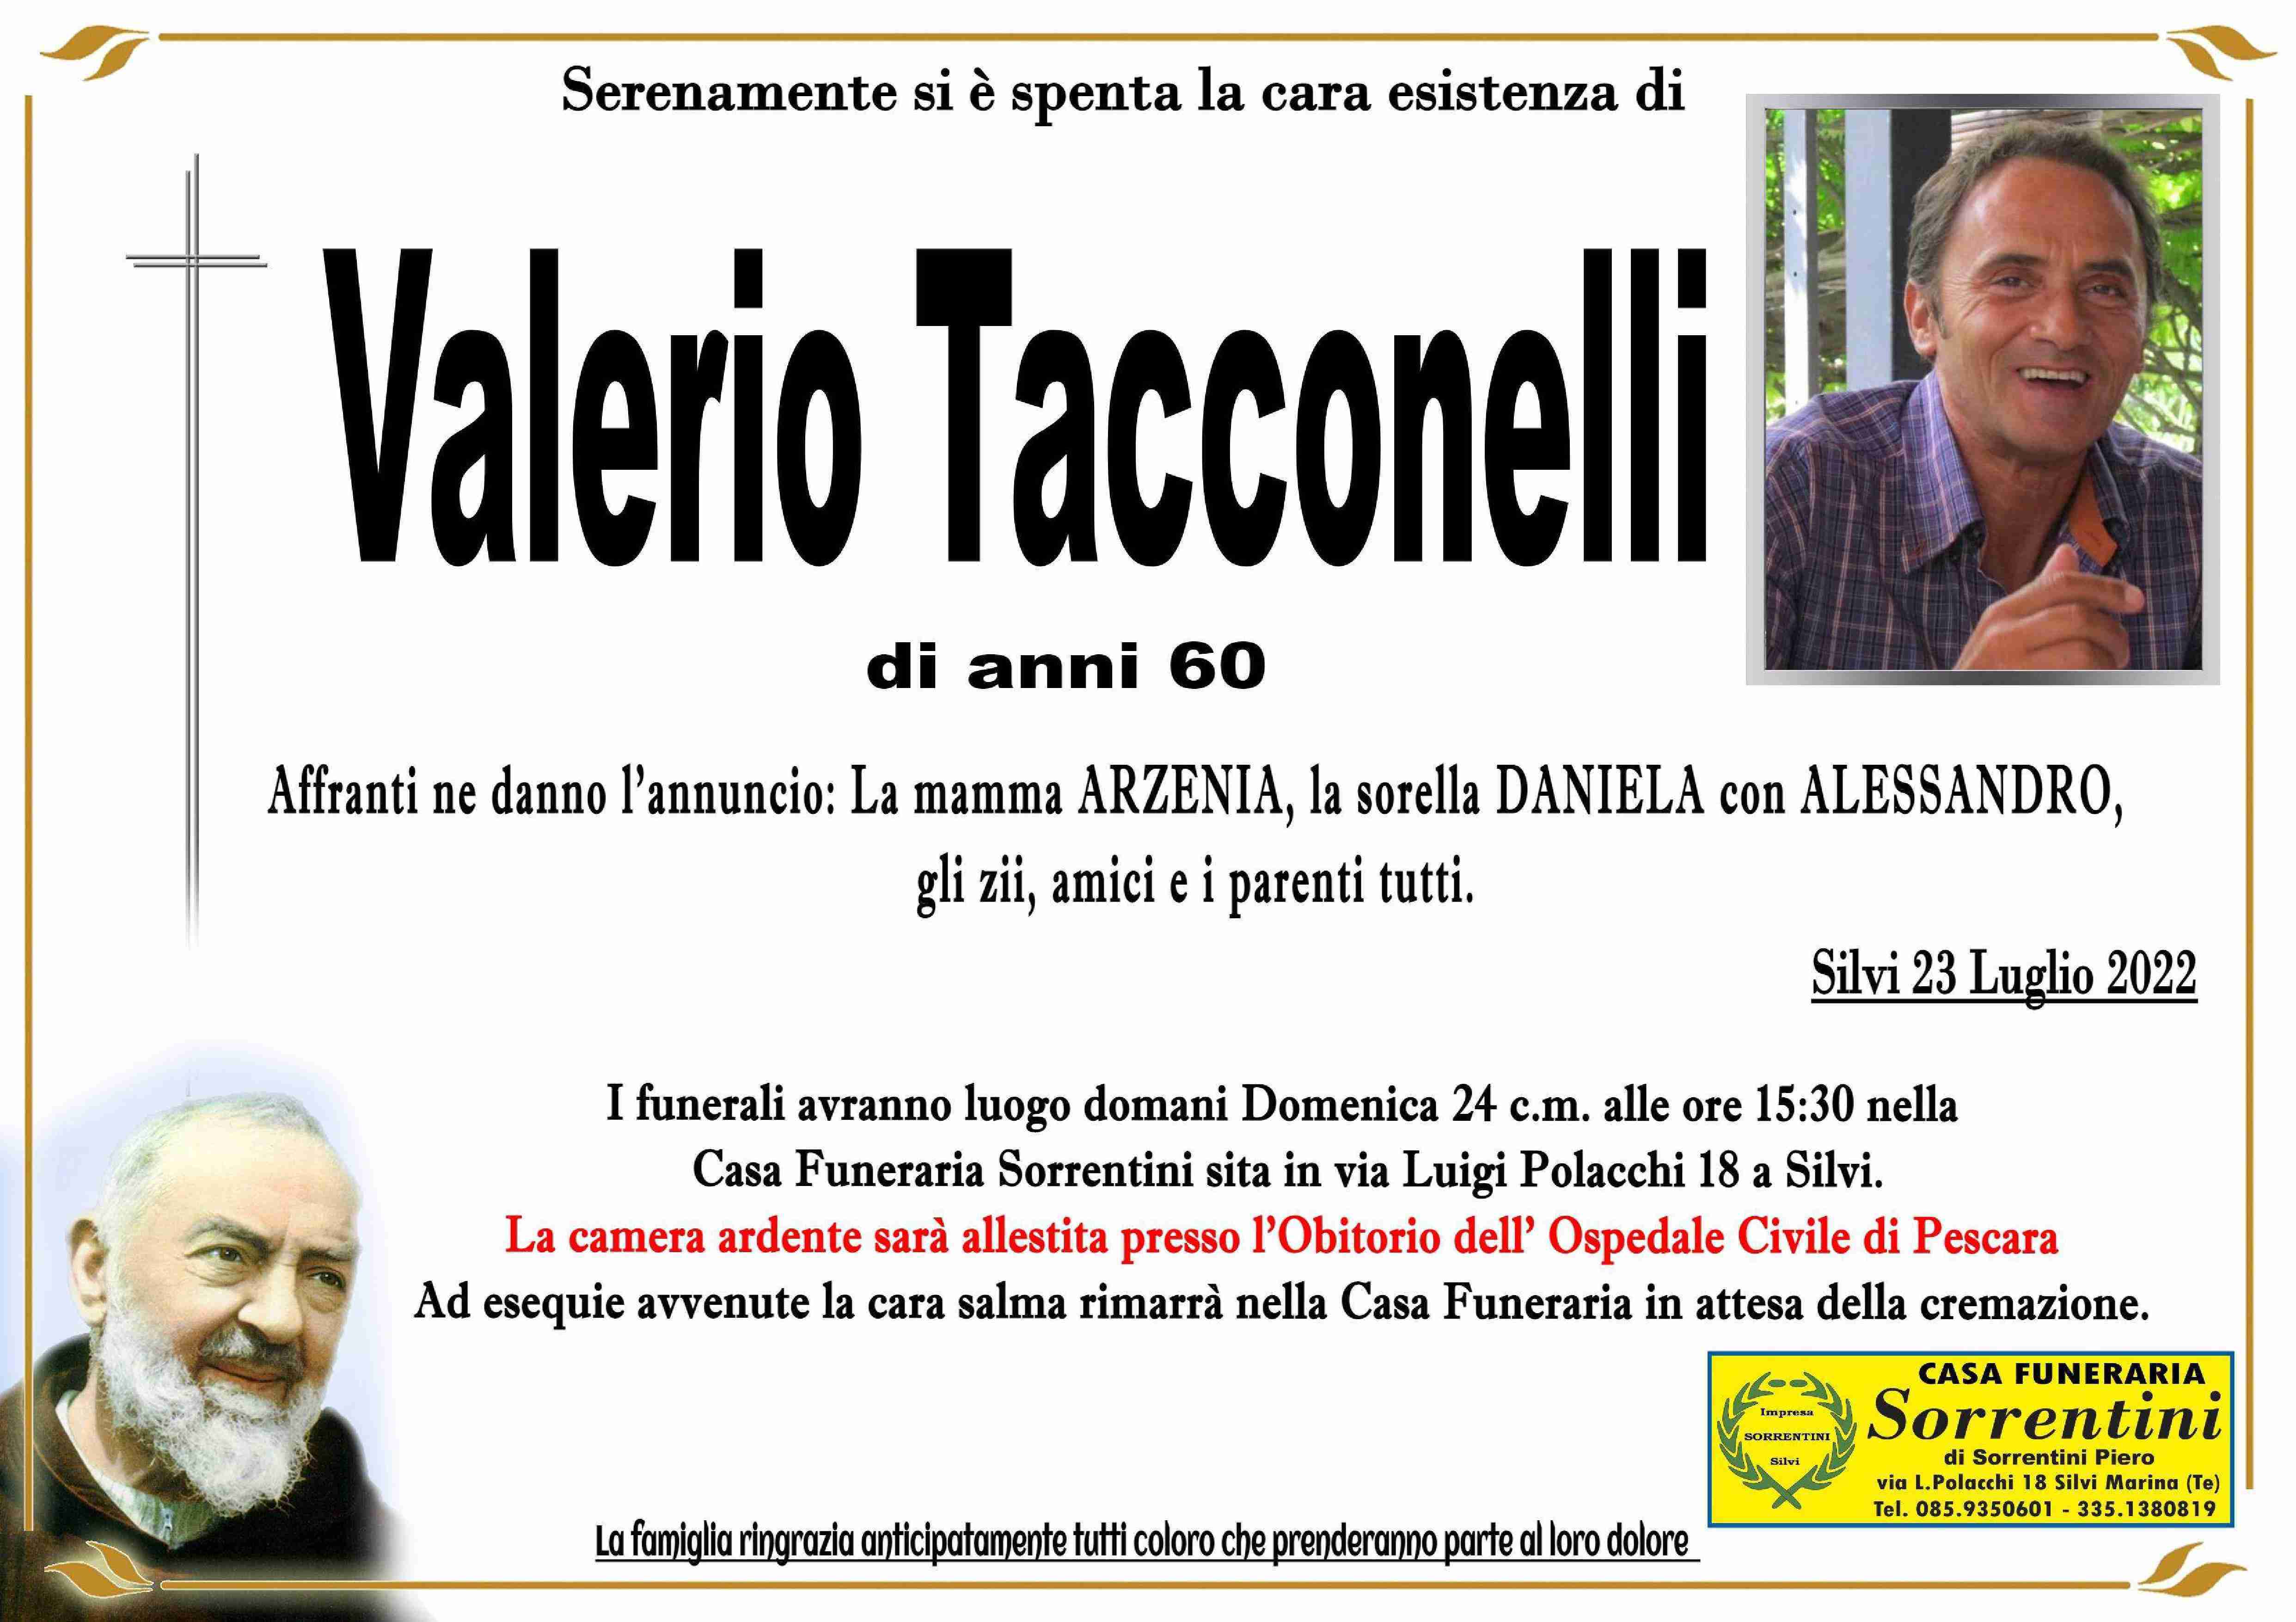 Valerio Tacconelli